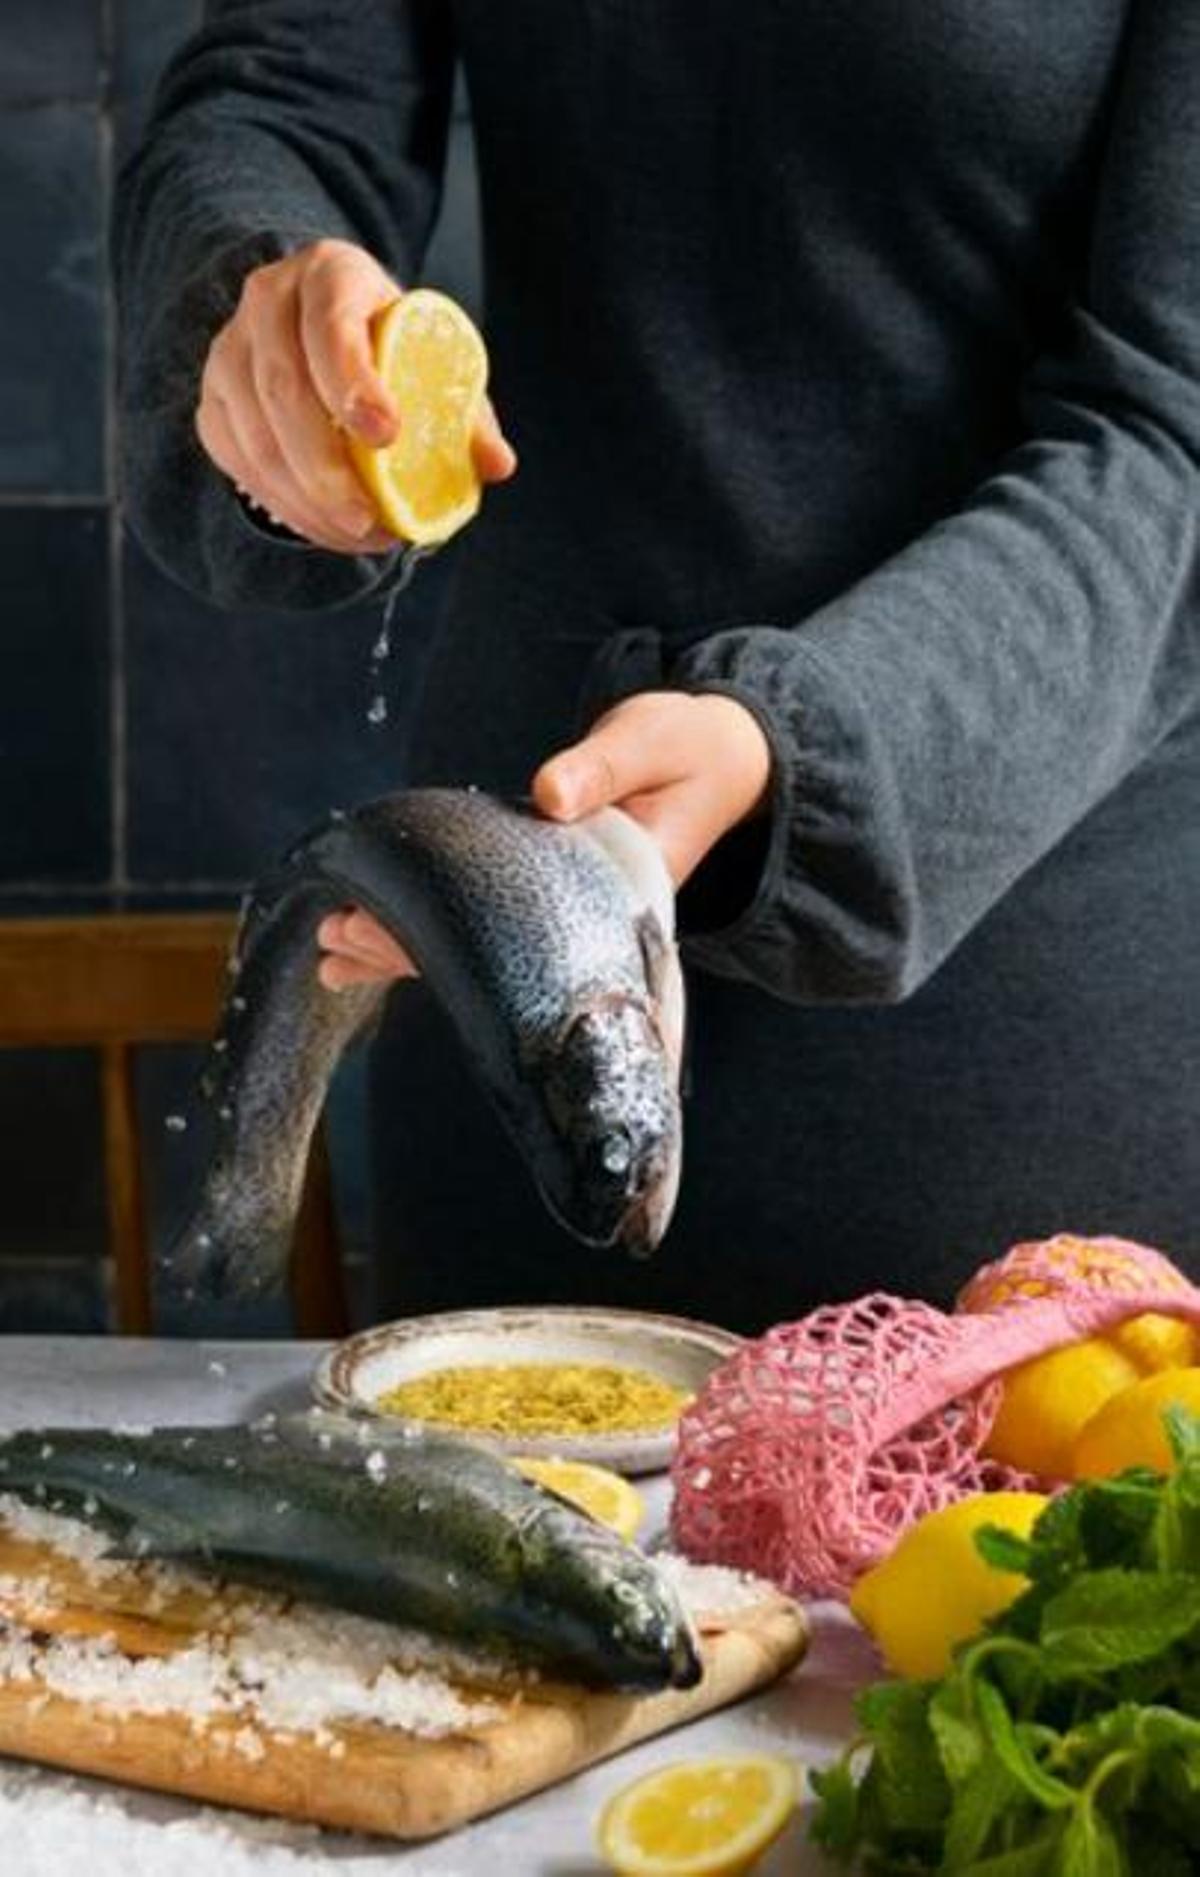 Compte amb el peix que consumeixes si estàs embarassada